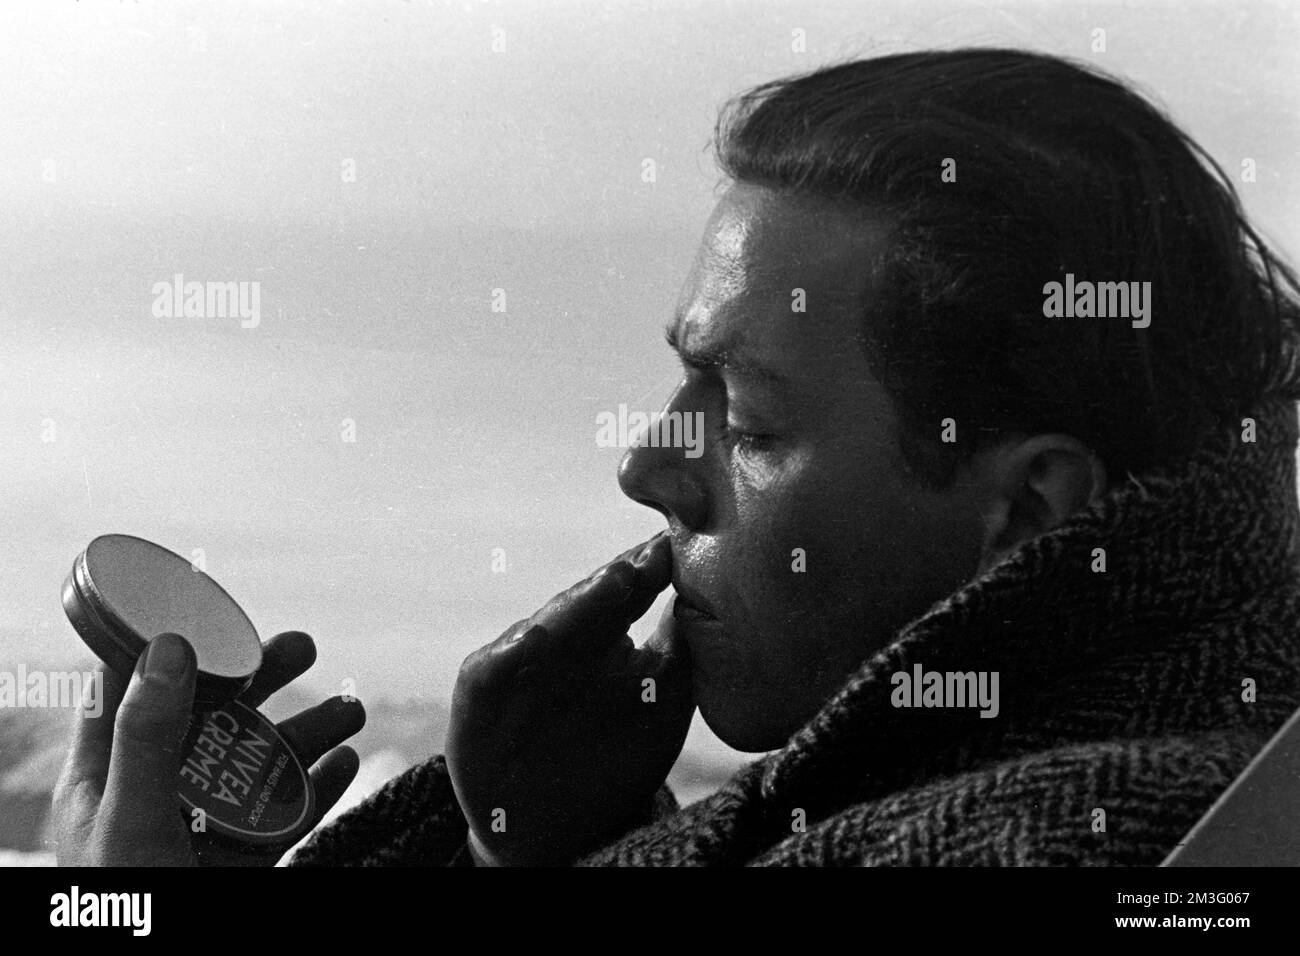 Auf dem Wankgipfel nach der Olympiade 1936 - Herrenportrait im Liegestuhl beim Sonnenbad auf dem Gipfel des Wank, Garmisch-Partenkirchen, 1936. On the Wank peak after the 1936 Olympics - Portrait of a man in a deckchair sunbathing on the summit of Wank mountain, Garmisch-Partenkirchen, 1936. Stock Photo